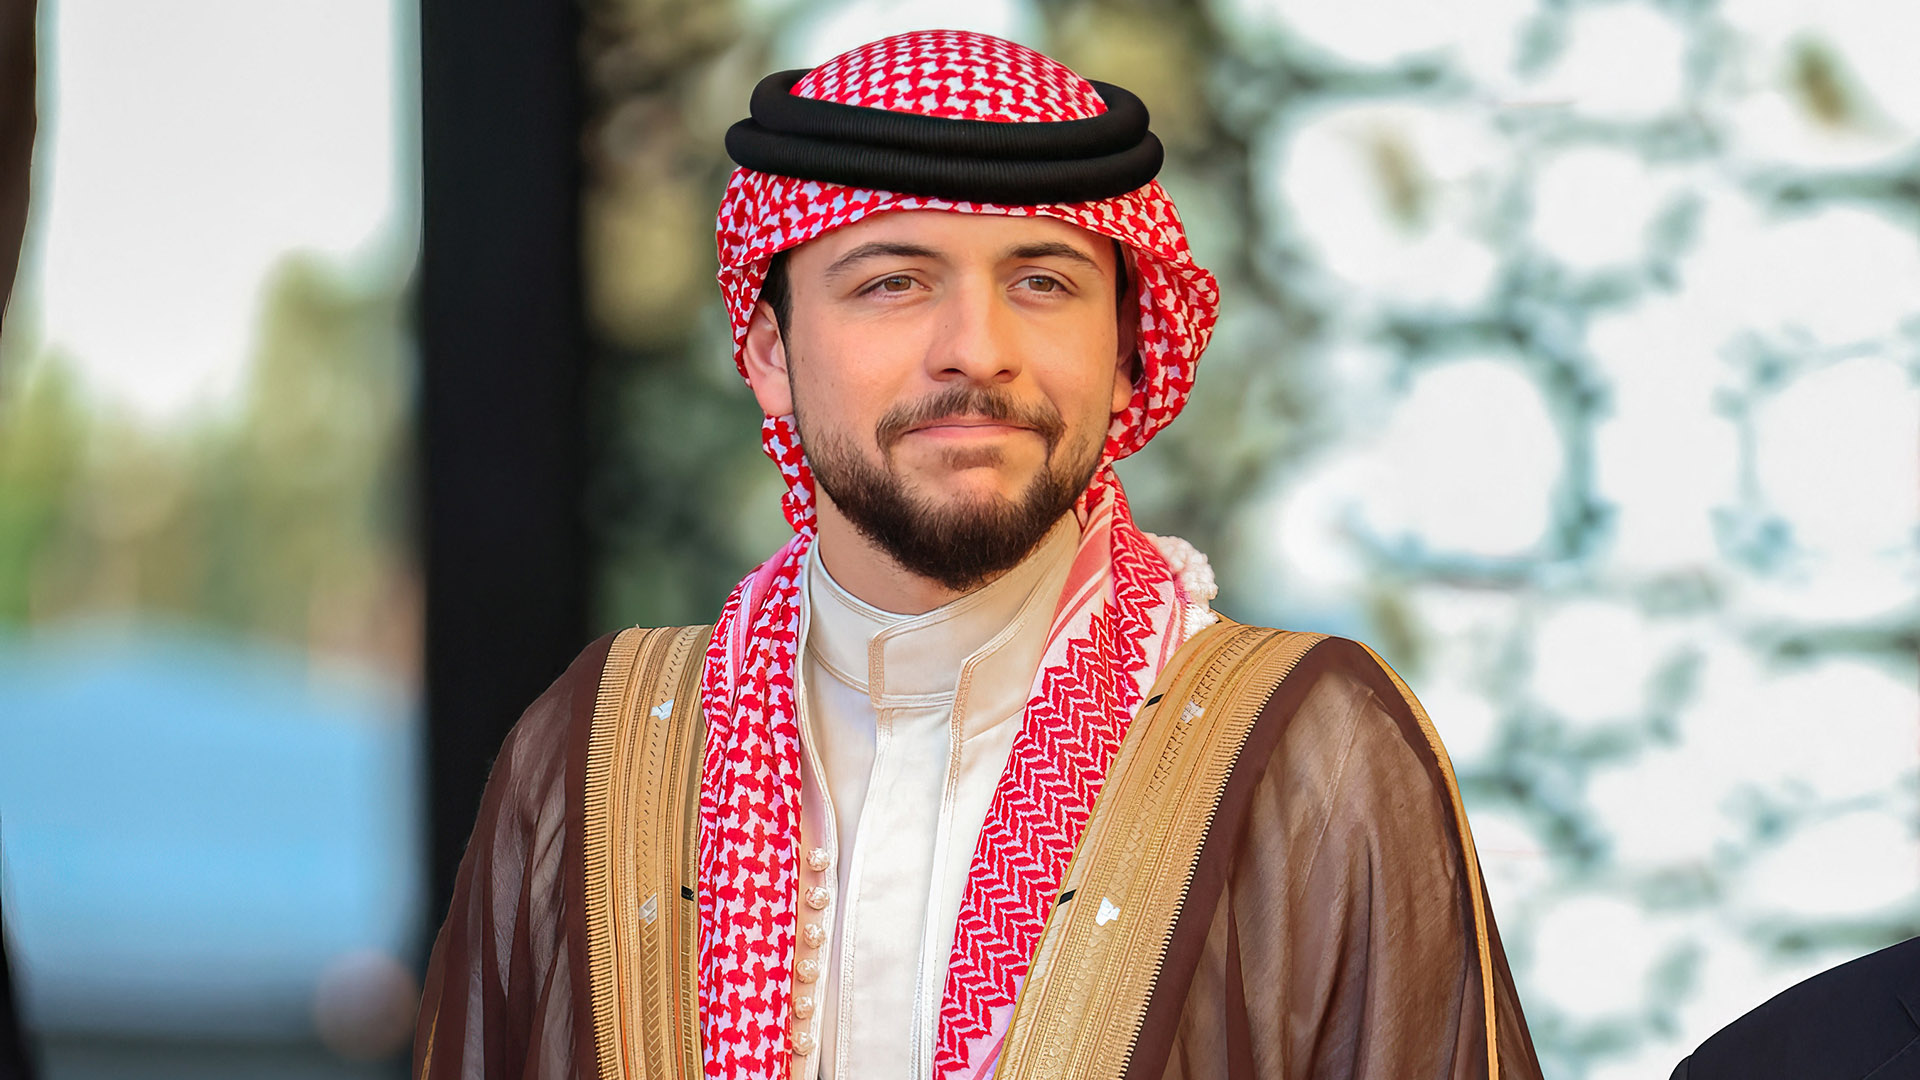 Hussein de Jordania, así es el príncipe que 'destronó' a su tío